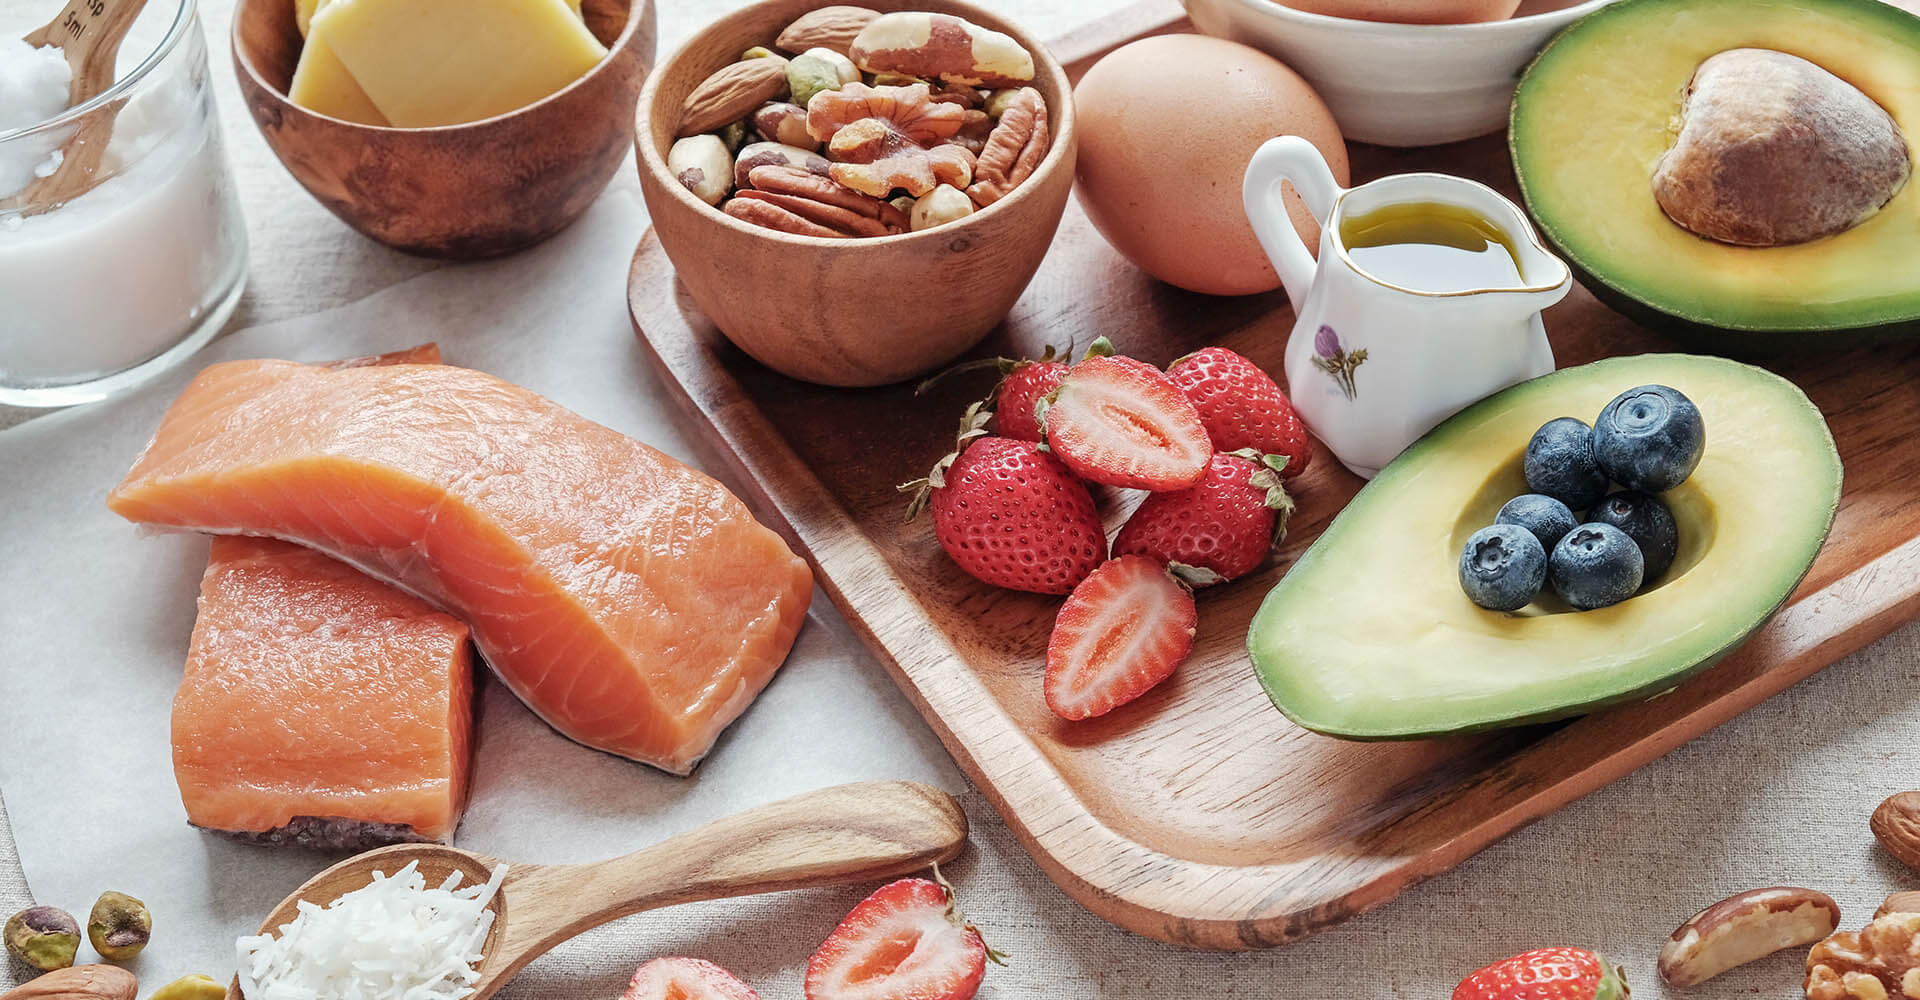 Viele klassische Bestandteile einer ketogenen Diät wie Lachs, Früchte, Nüsse und Eier